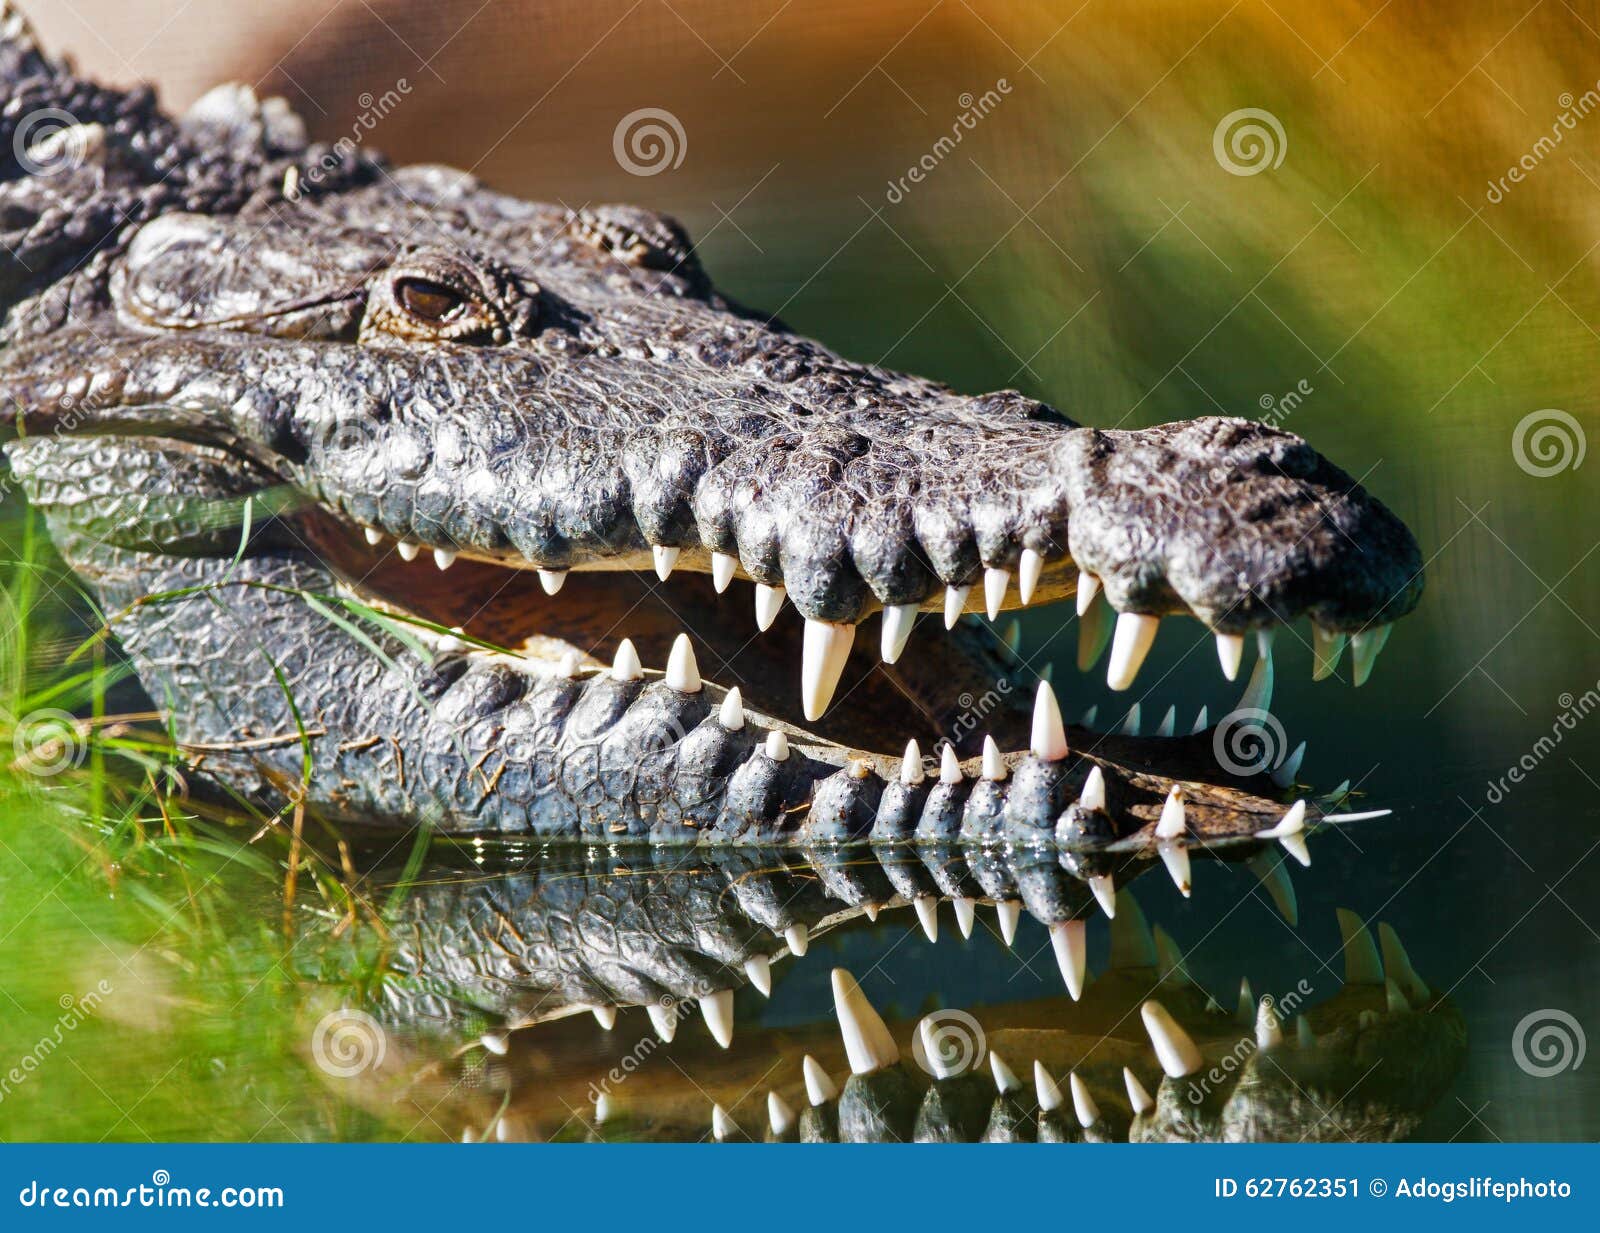 dangerous american crocodile in water